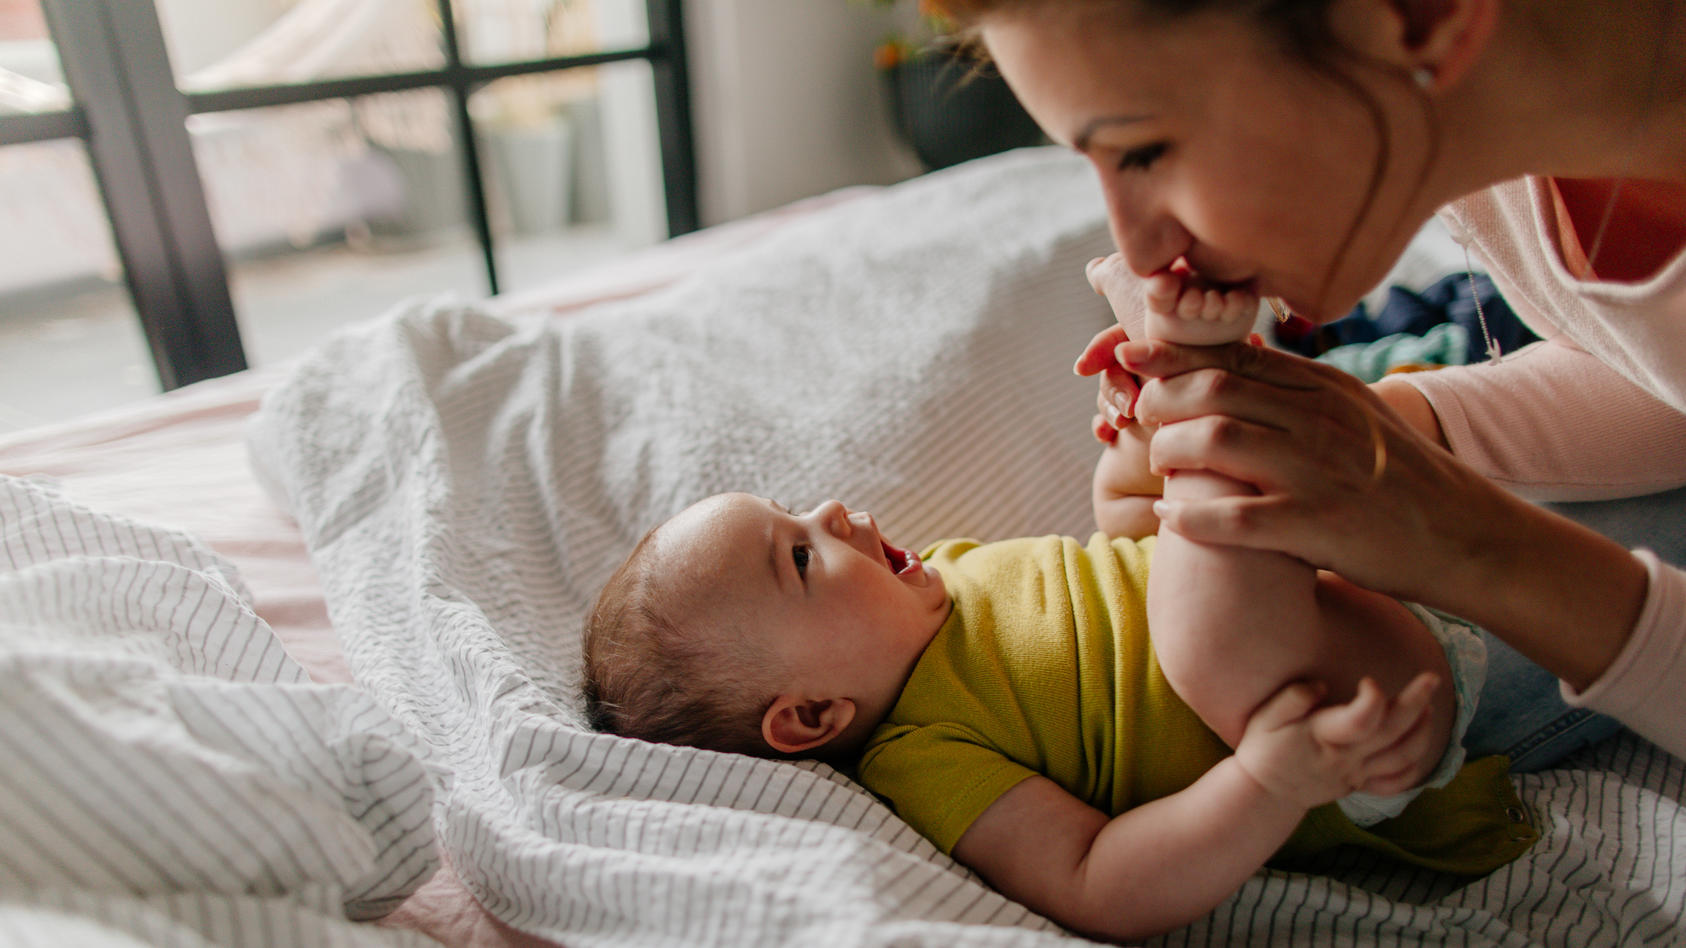 Sie werden so schnell groß: Im dritten Monat der Babyentwicklung entwickeln sich vor allem emotionale Fähigkeiten weiter und stärken die Beziehung zwischen Baby und Eltern.